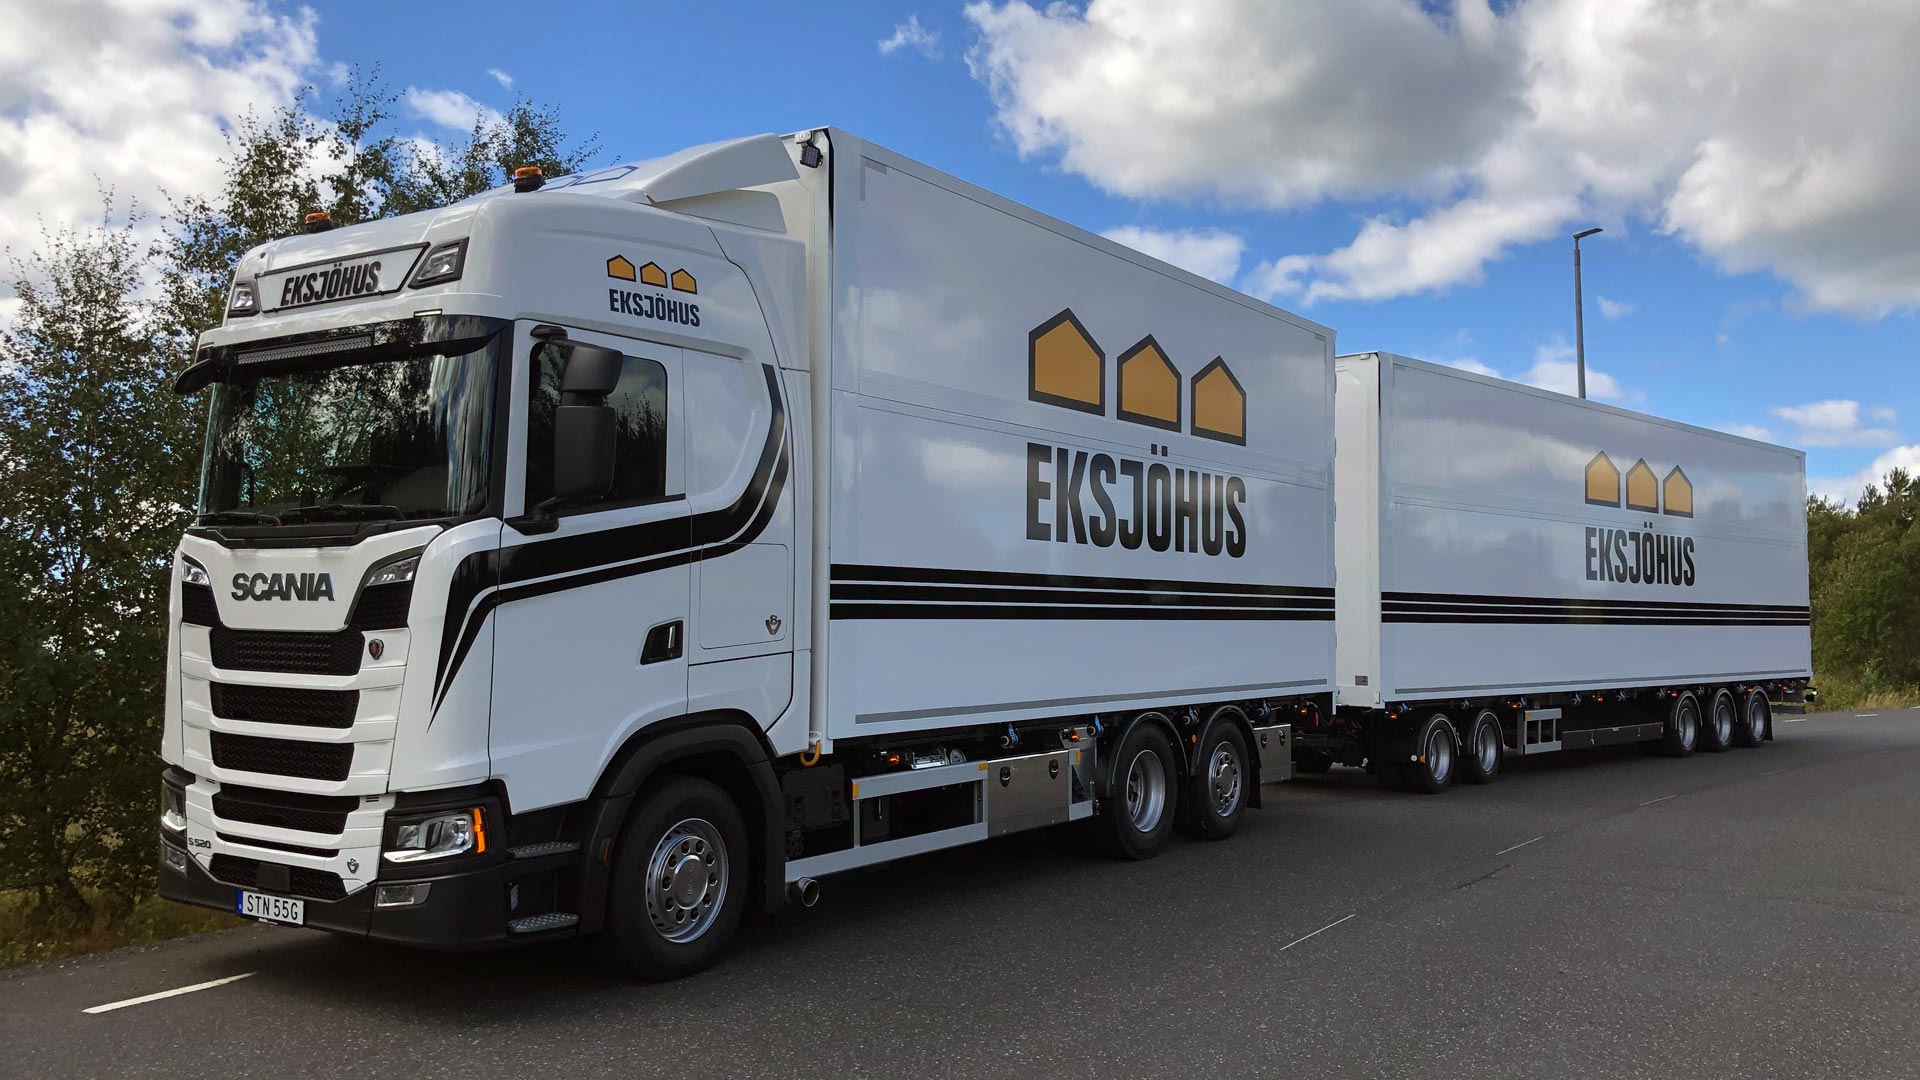 Ny Scanialastbil är levererad till Eksjöhus AB.